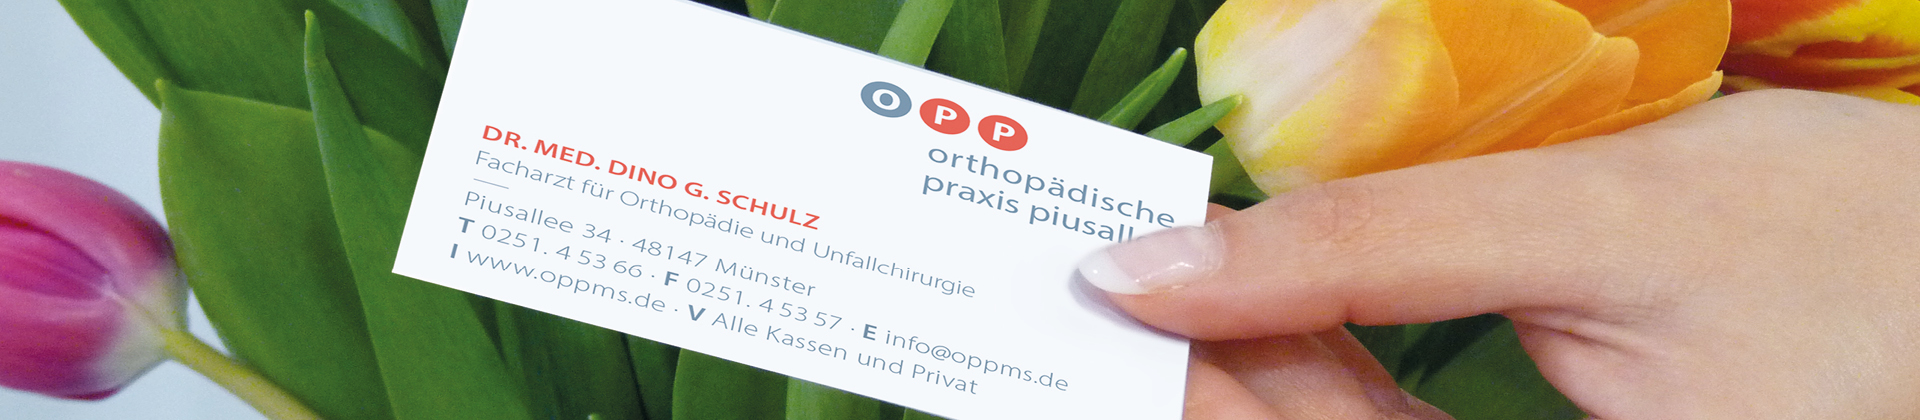 Orthopädische Praxis Piusallee| Dr. Dino D. Schulz